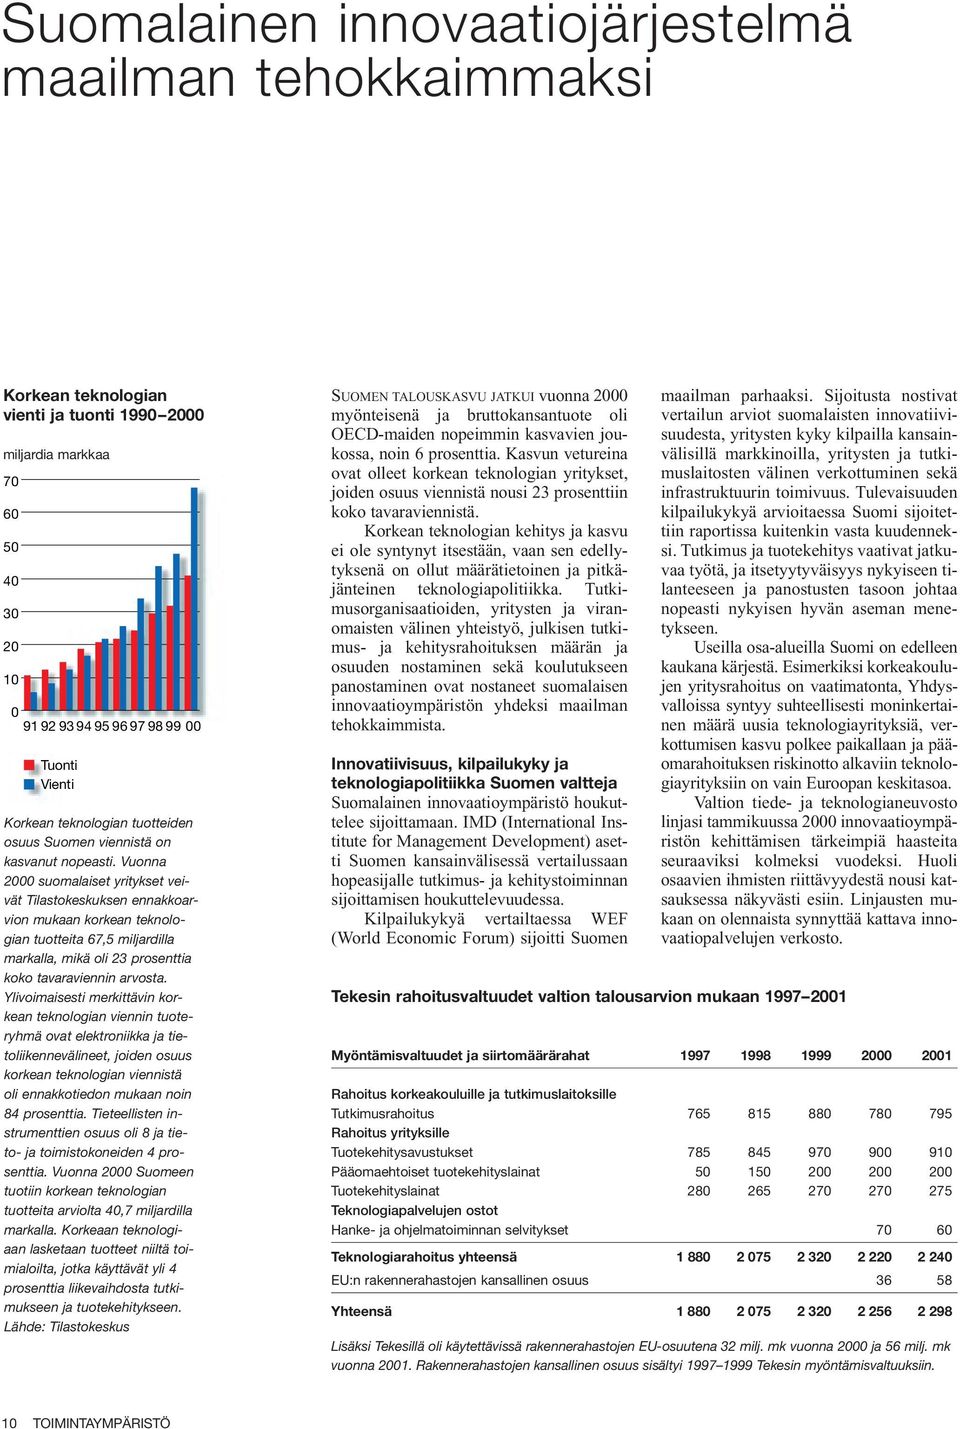 Vuonna 2000 suomalaiset yritykset veivät Tilastokeskuksen ennakkoarvion mukaan korkean teknologian tuotteita 67,5 miljardilla markalla, mikä oli 23 prosenttia koko tavaraviennin arvosta.